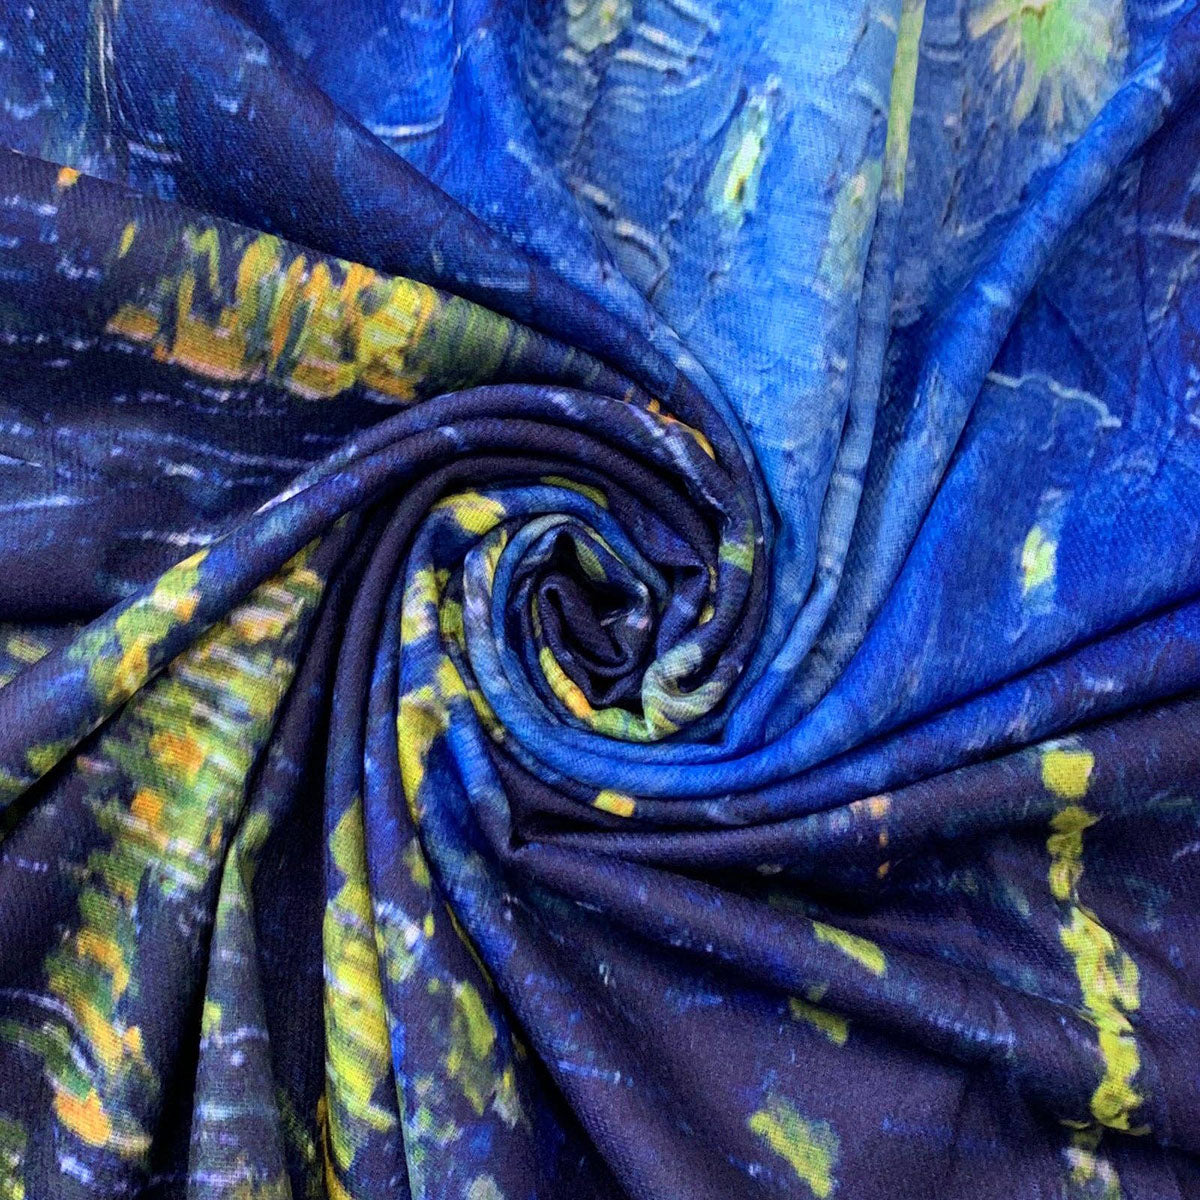 Van Gogh Style Blue Starry Over The Rhone Wool Mix Tassel Scarf - SKRF